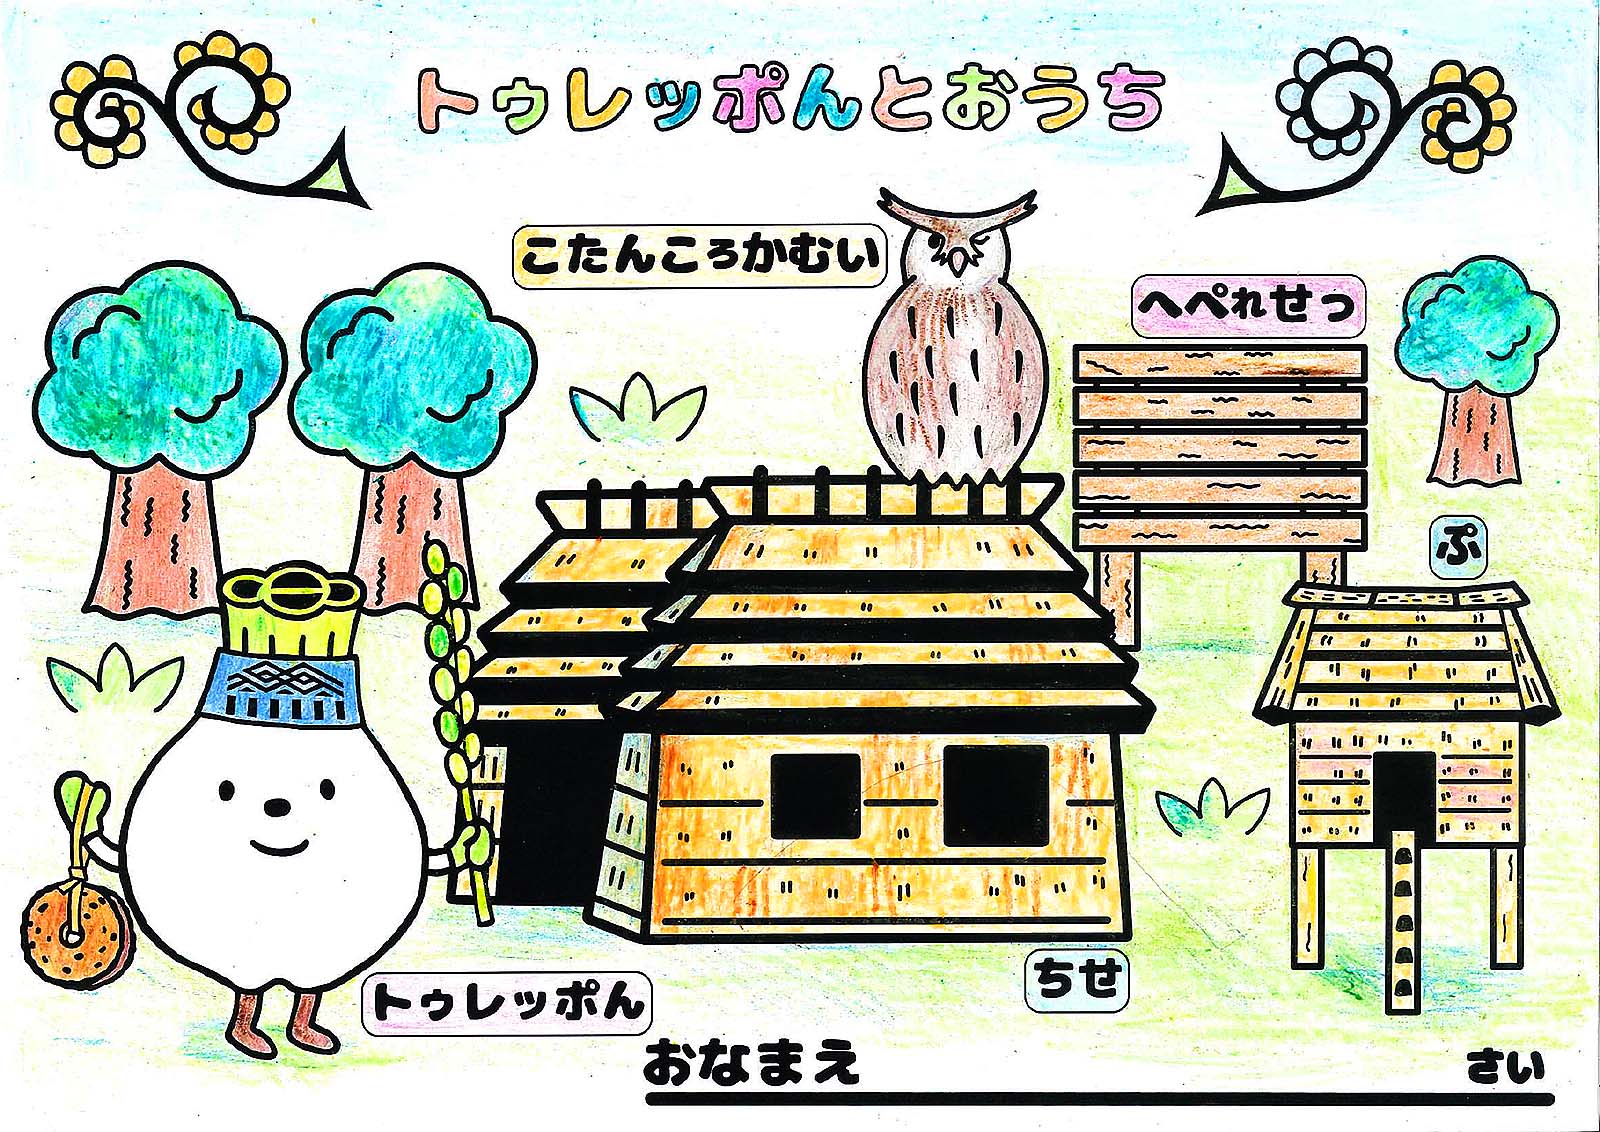 夏休み企画 トゥレッポん のぬり絵を配布します ウポポイ 民族共生象徴空間 National Ainu Museum And Park